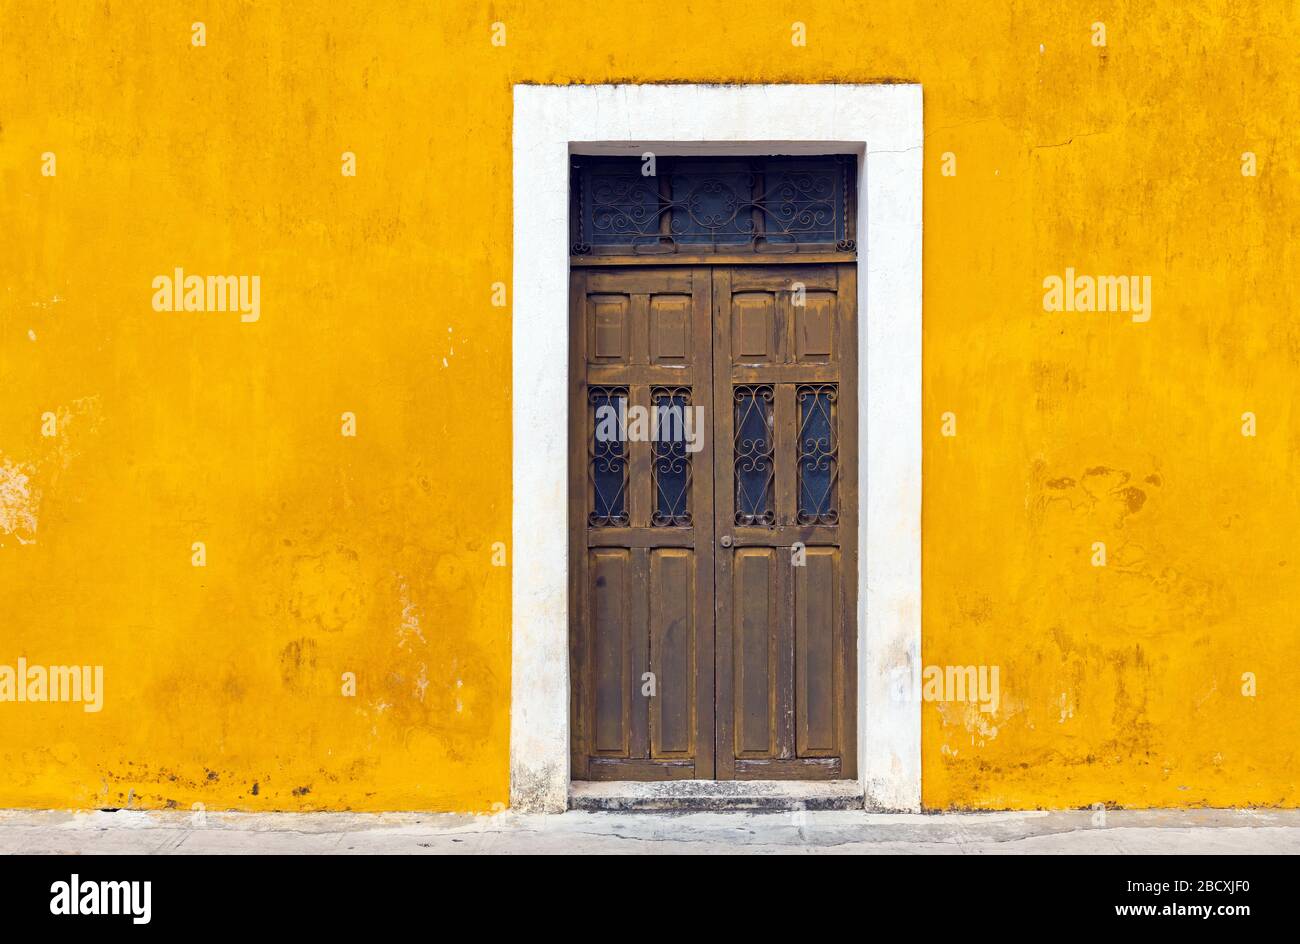 Yellow wall facade and door in the city center of Izamal, Yucatan Peninsula, Mexico. Stock Photo